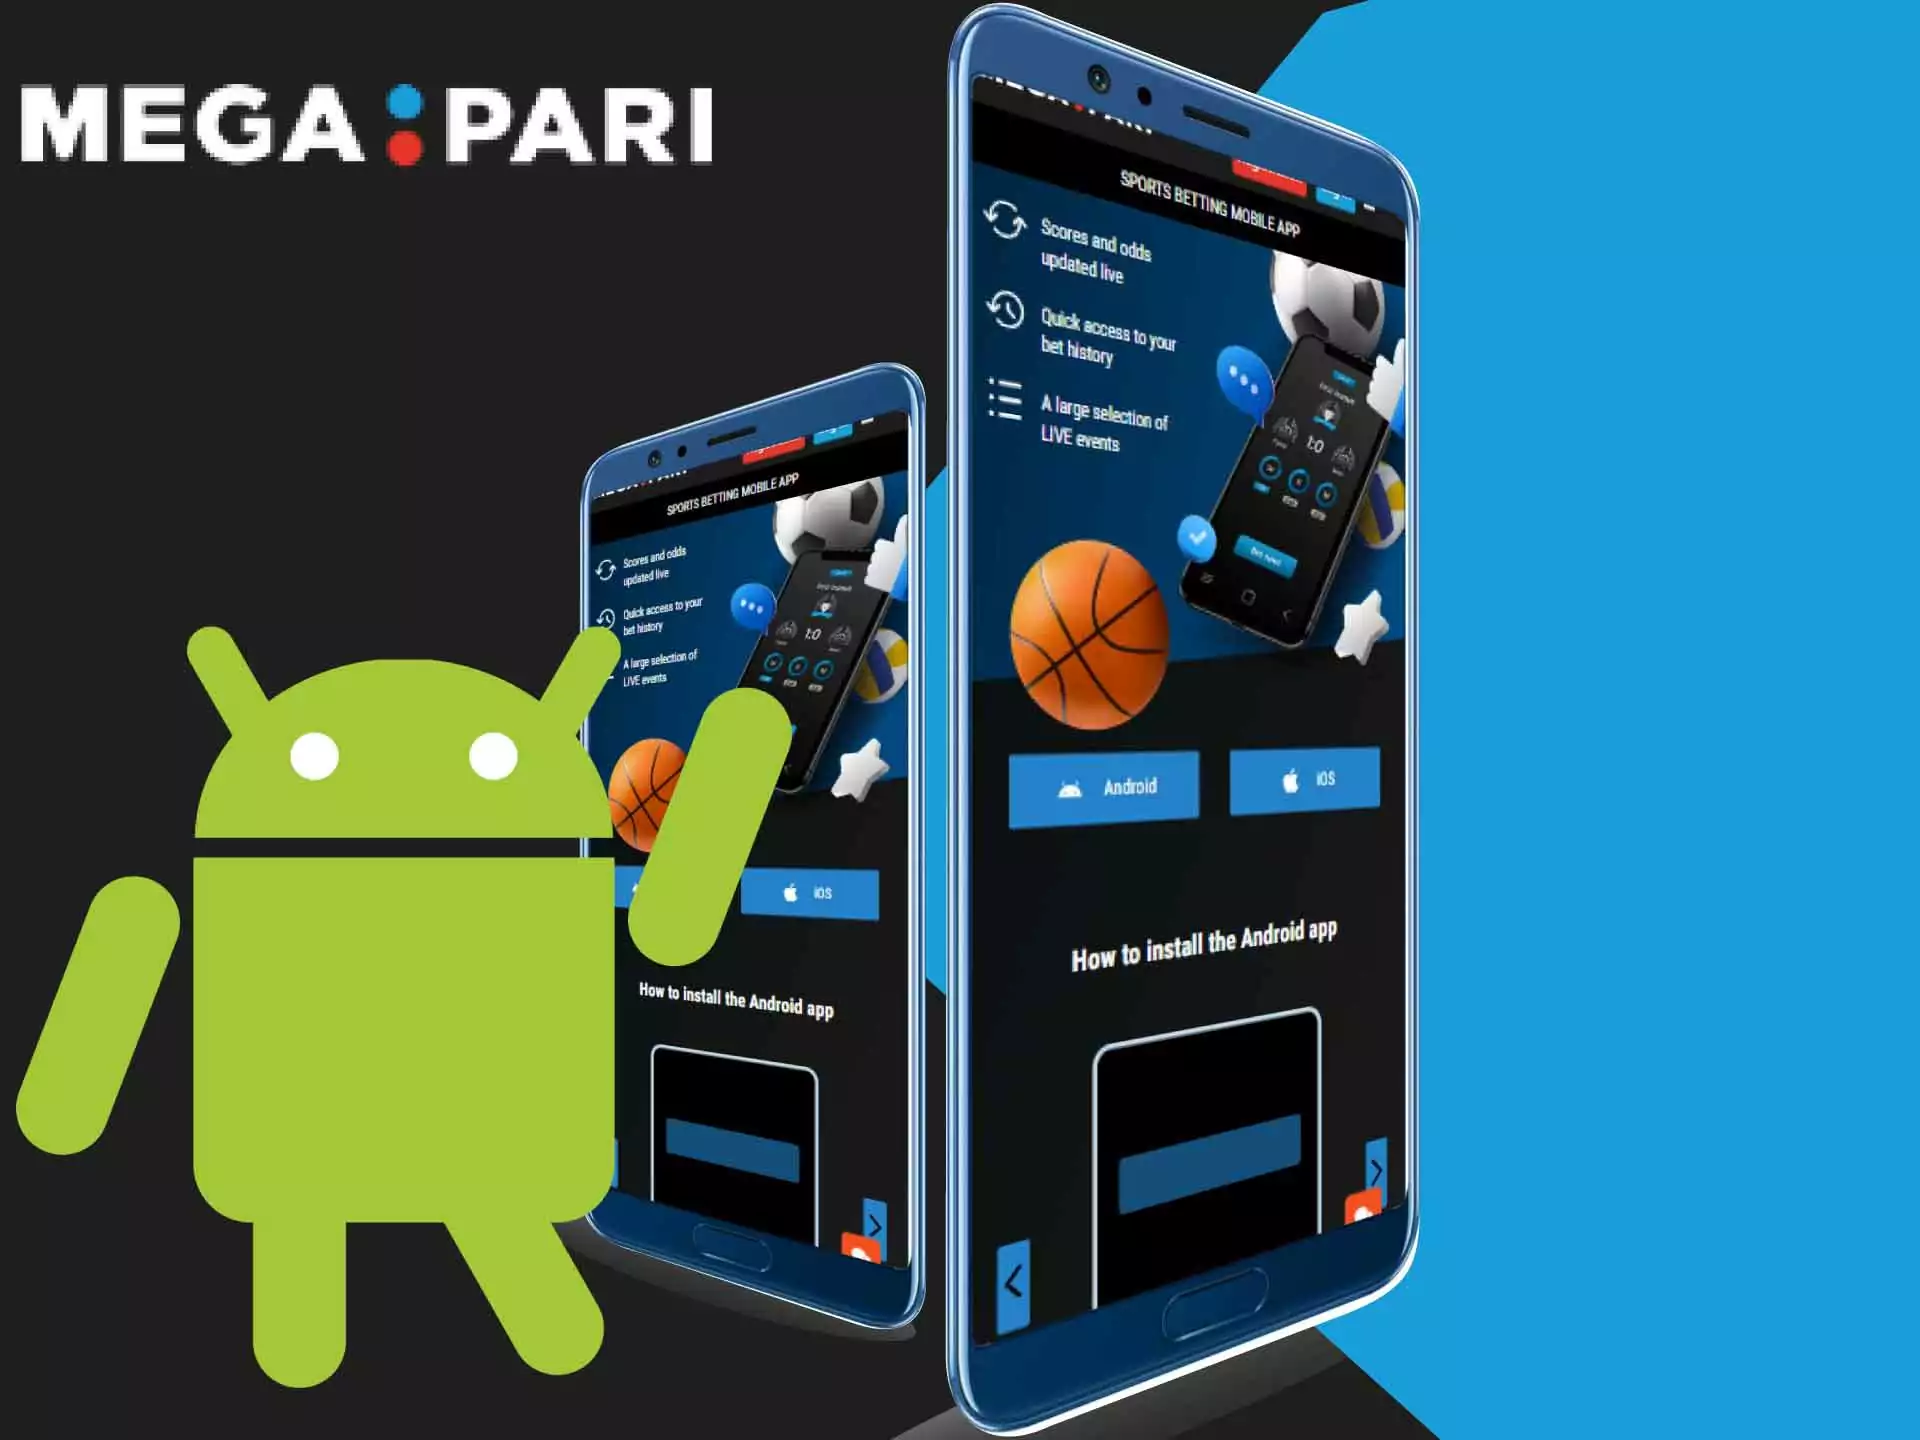 Faça o download do aplicativo Megapari no site oficial e instale -o